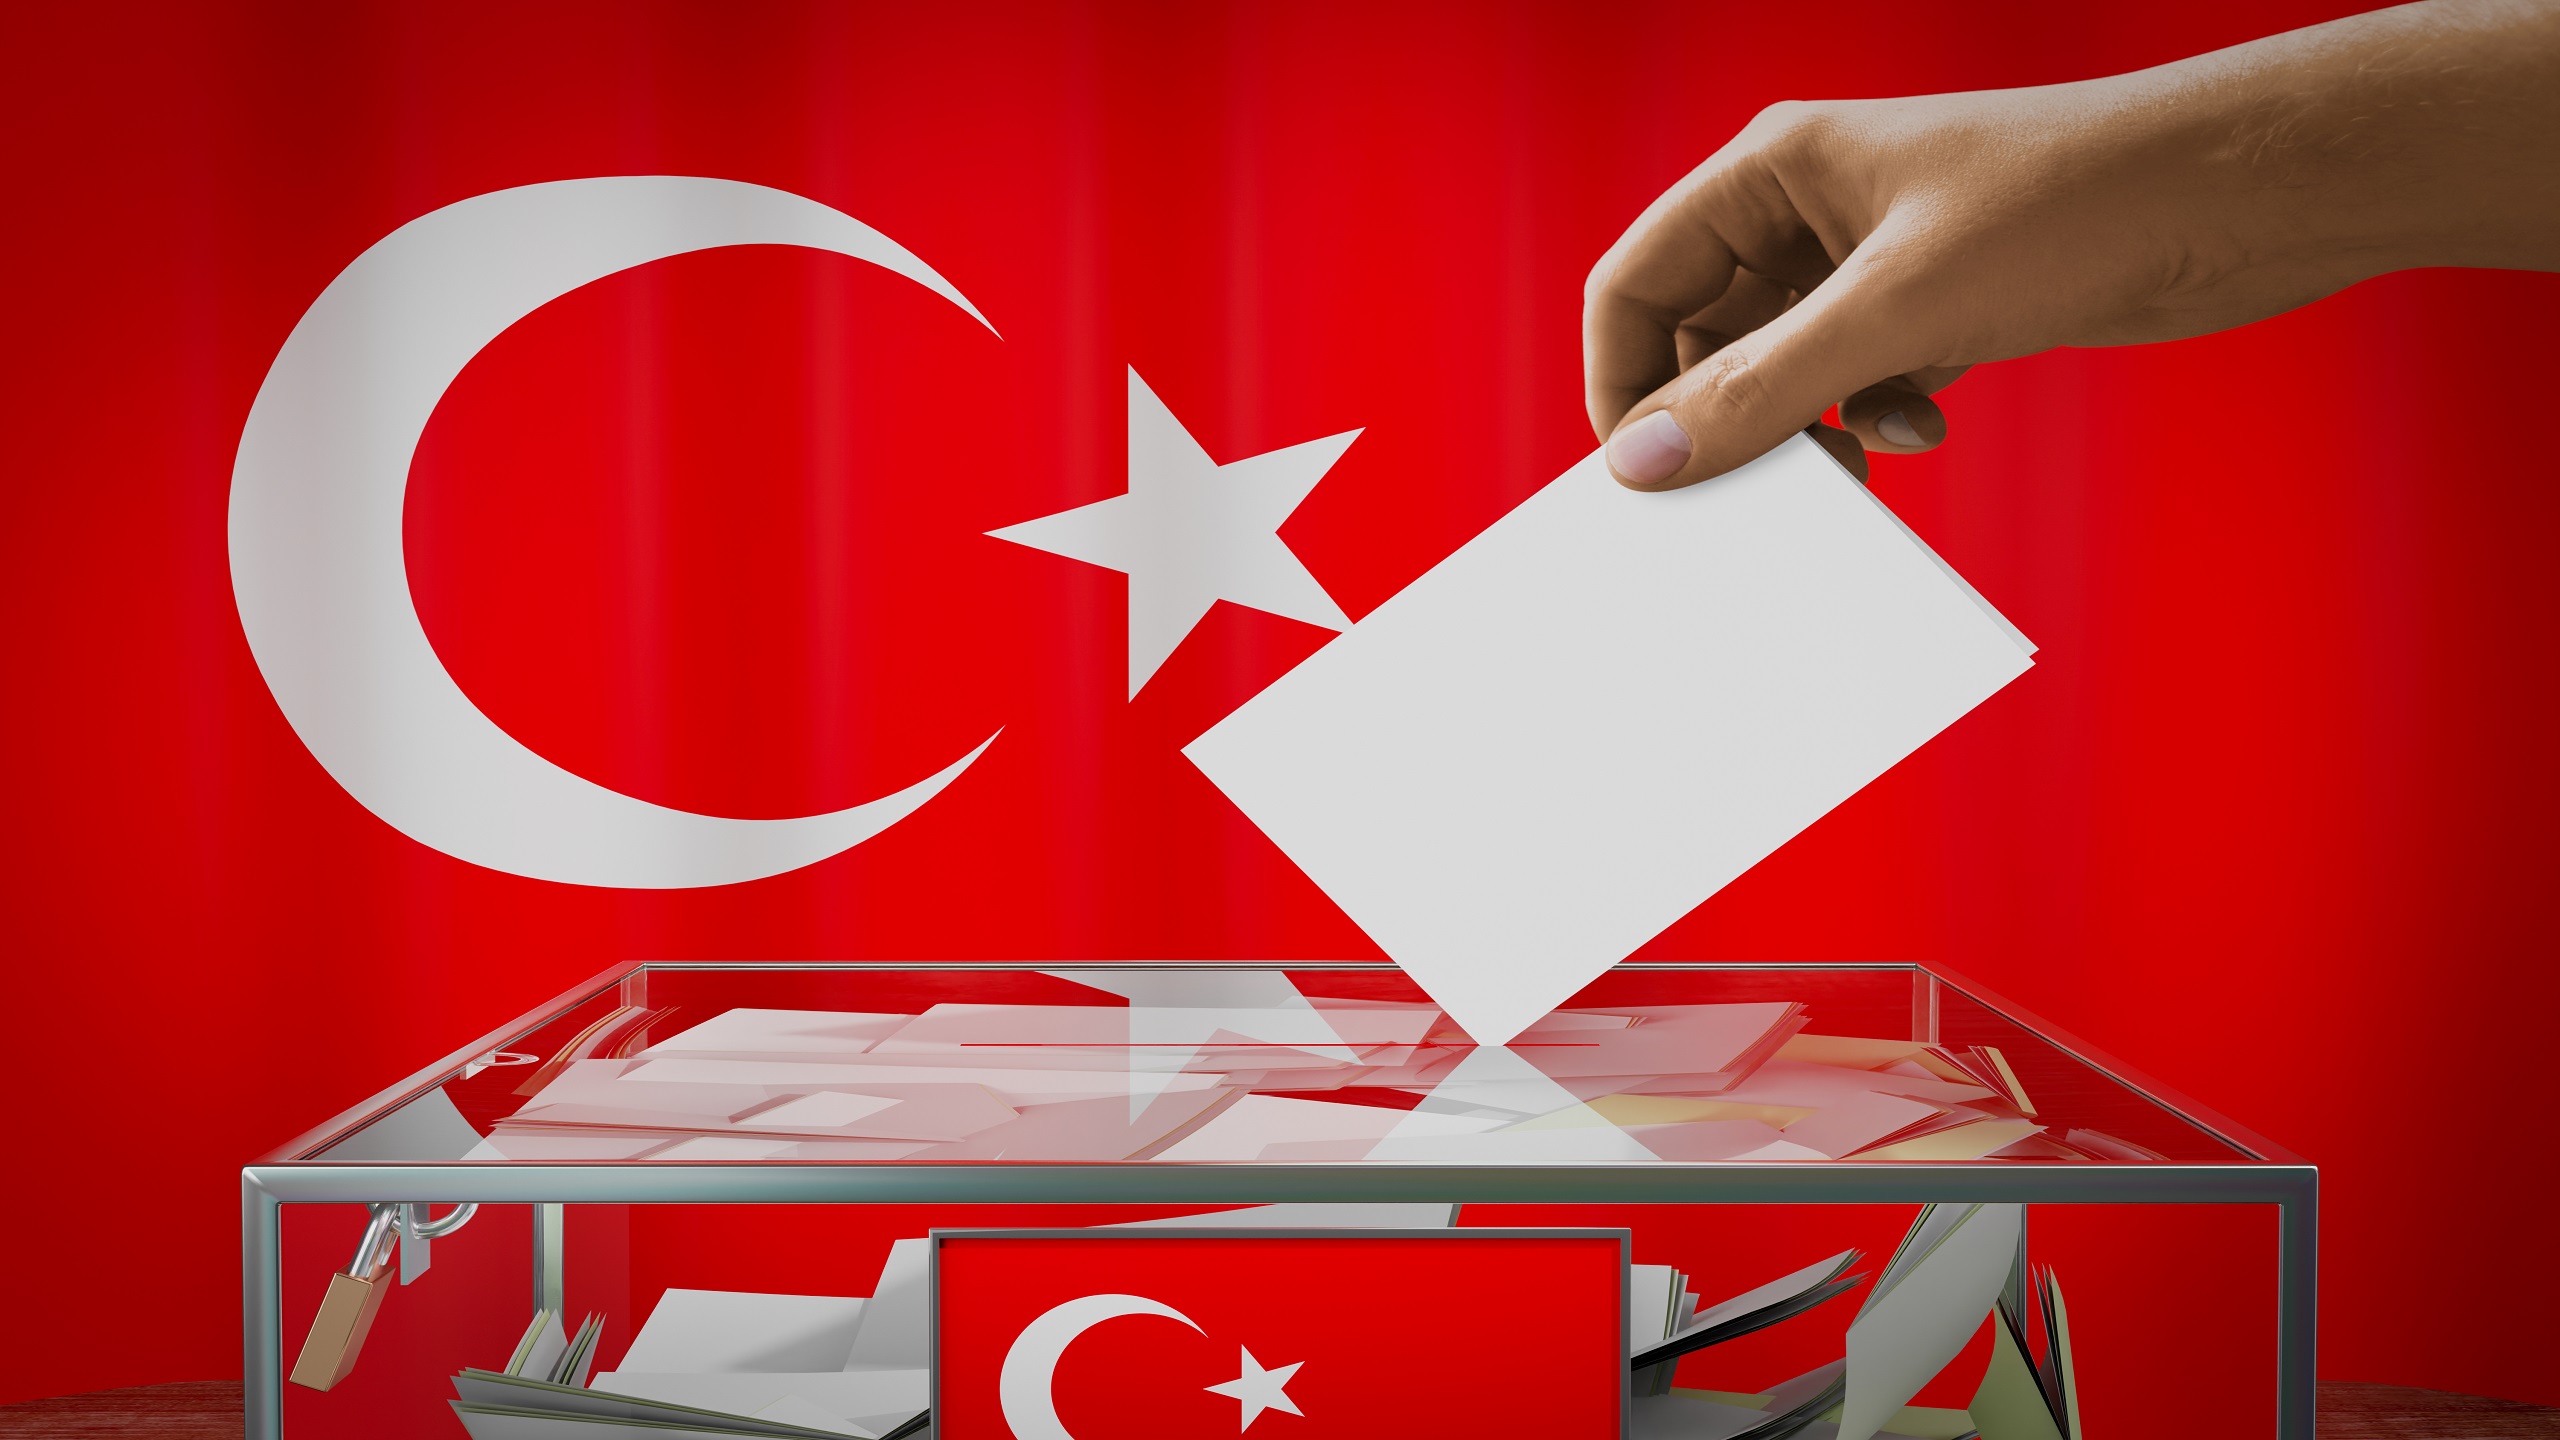 Kılıçdaroğlu Rises in Turkey’s Election Race Against Erdoğan